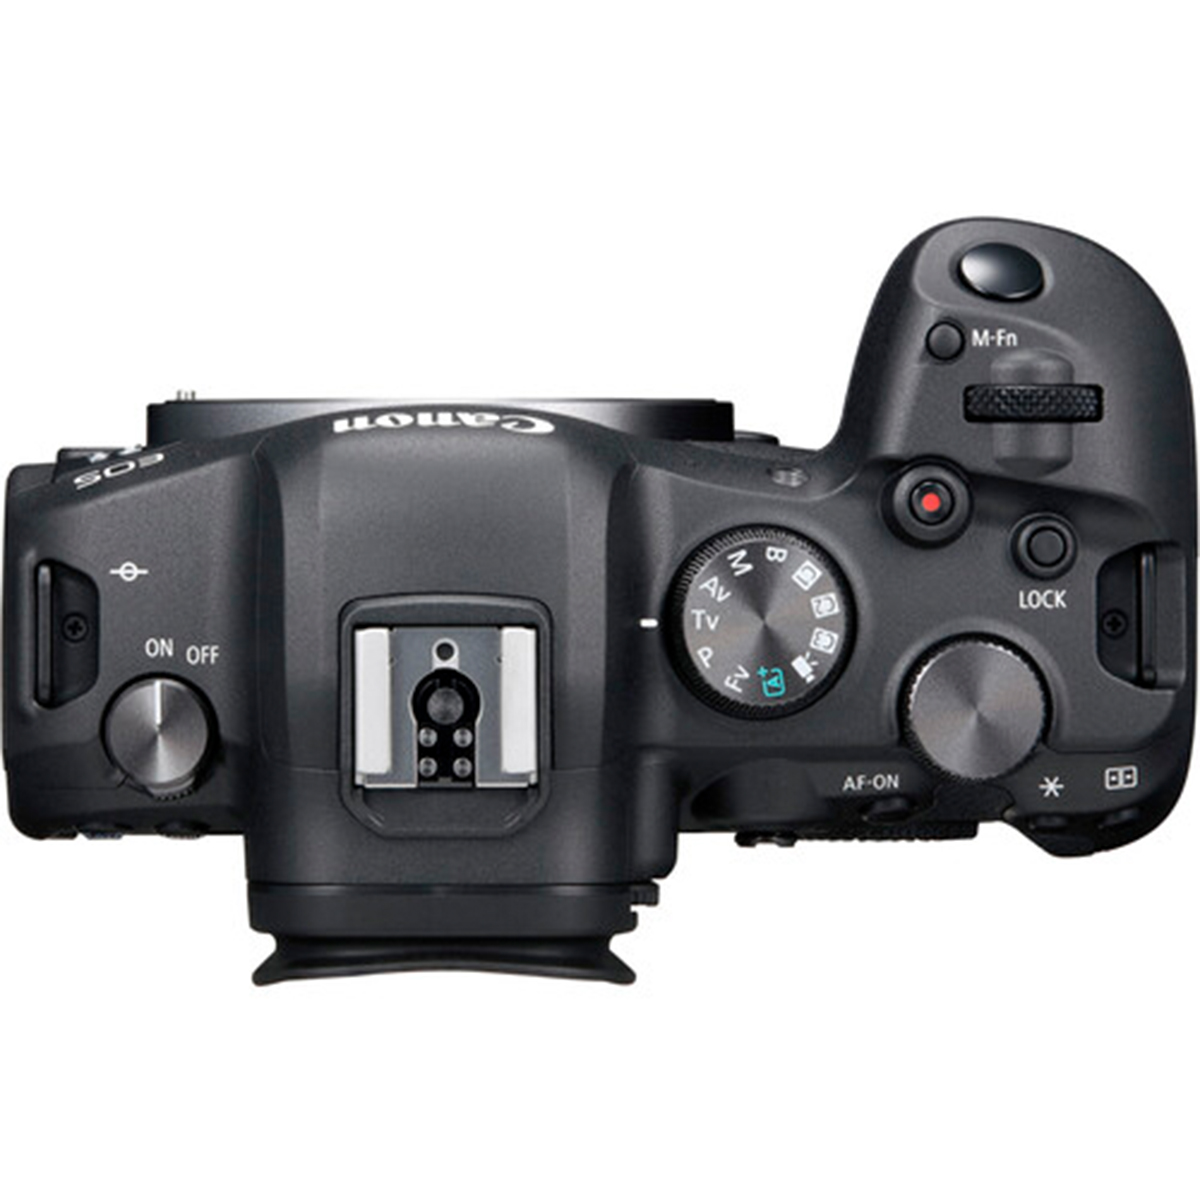 دوربین دیجیتال کانن مدل  EOS R6 Body ا Canon EOS R6